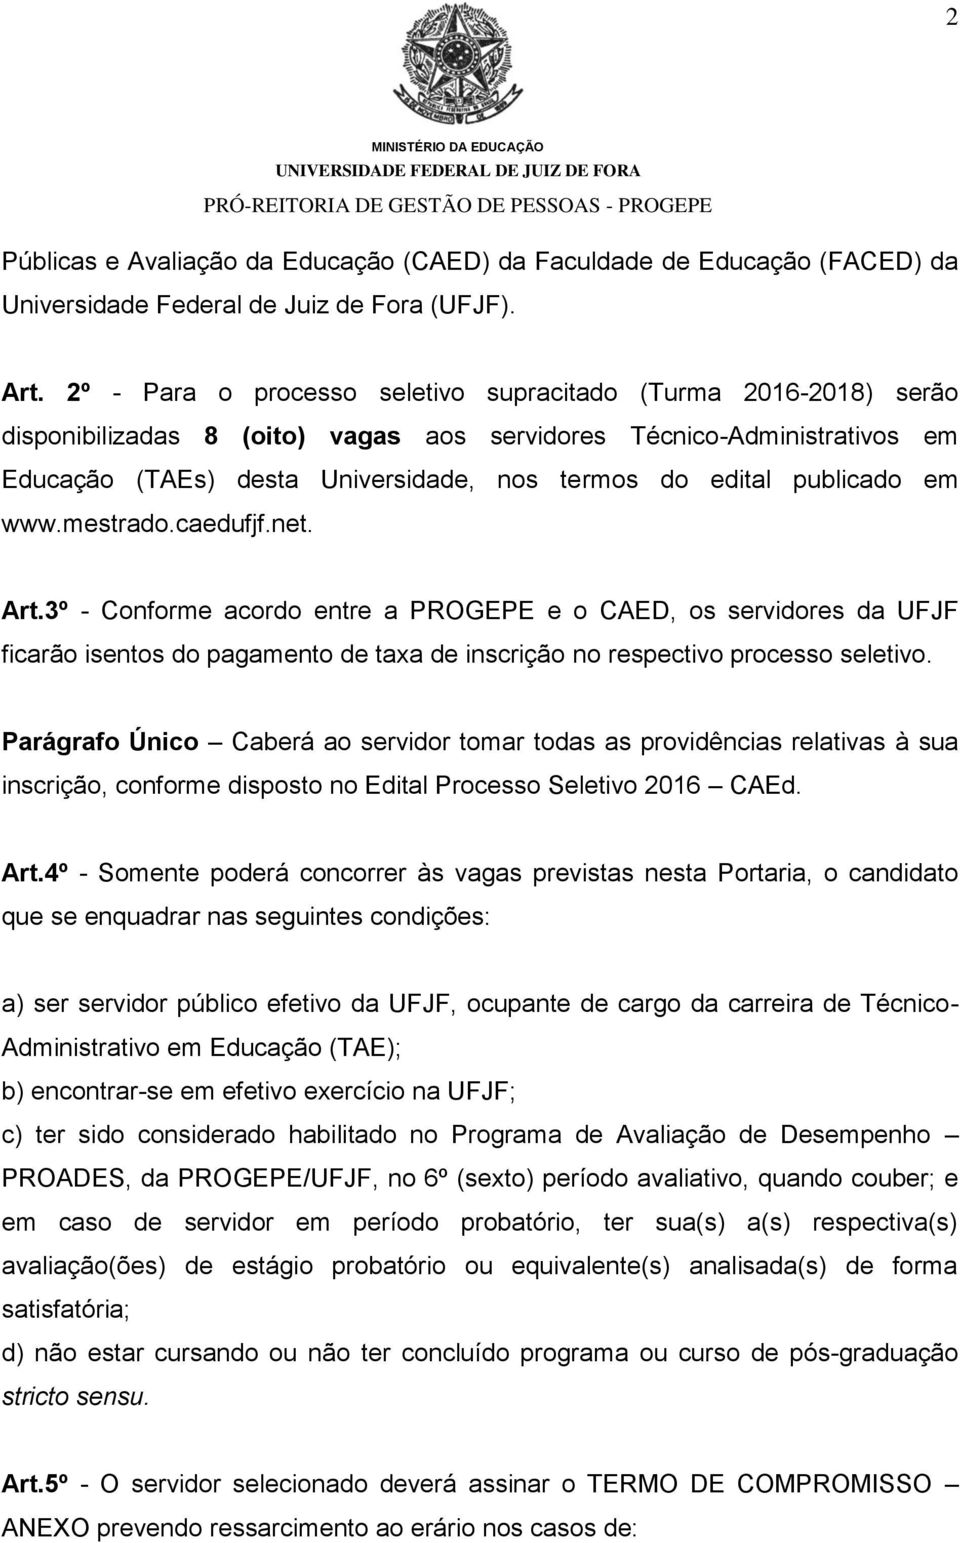 publicado em www.mestrado.caedufjf.net. Art.3º - Conforme acordo entre a PROGEPE e o CAED, os servidores da UFJF ficarão isentos do pagamento de taxa de inscrição no respectivo processo seletivo.